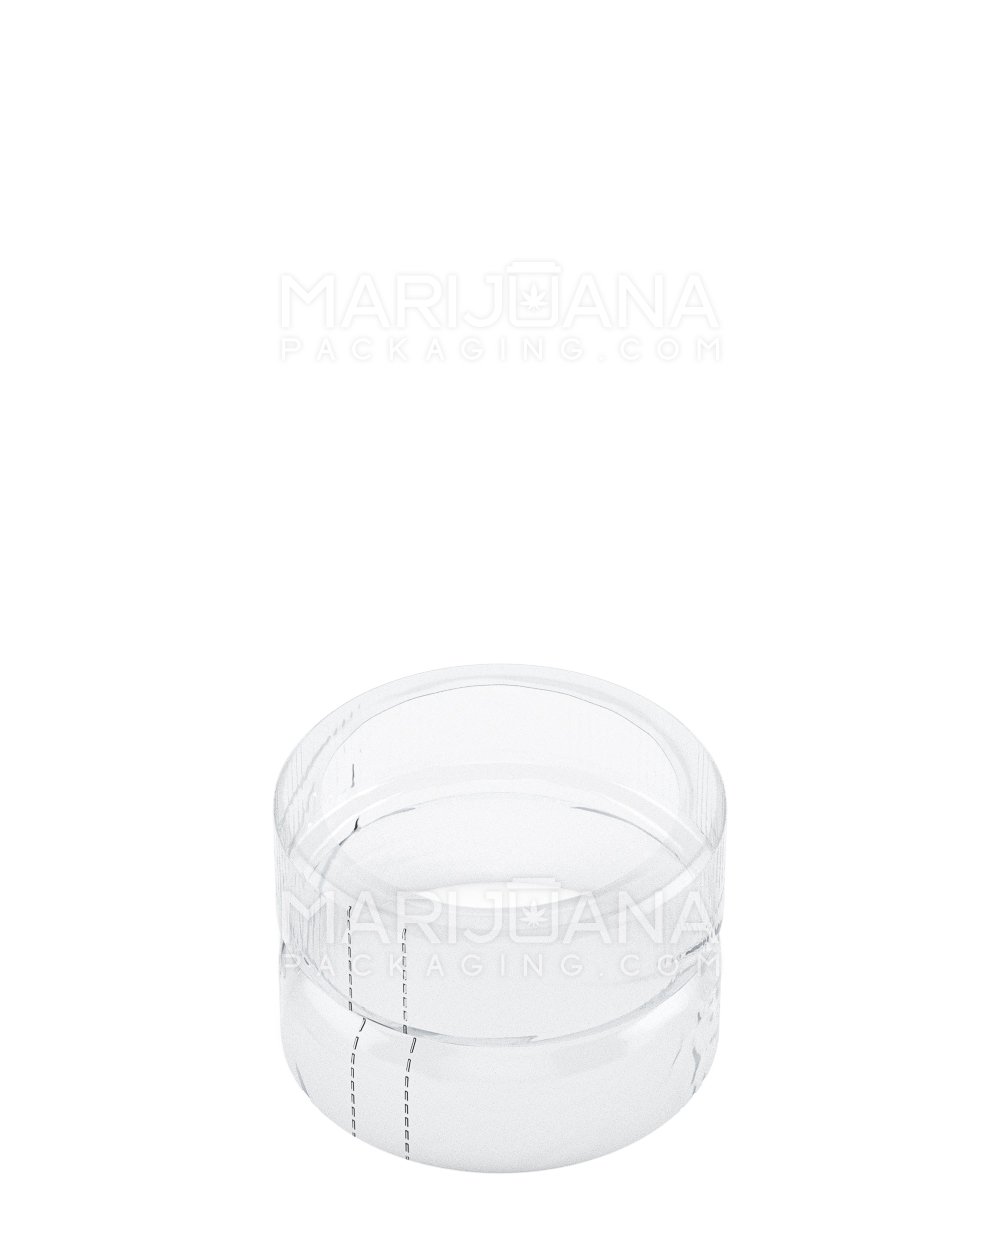 Tamper Evident | Heat Shrink Bands for Jars | 1oz - Clear Plastic - 1000 Count - 1